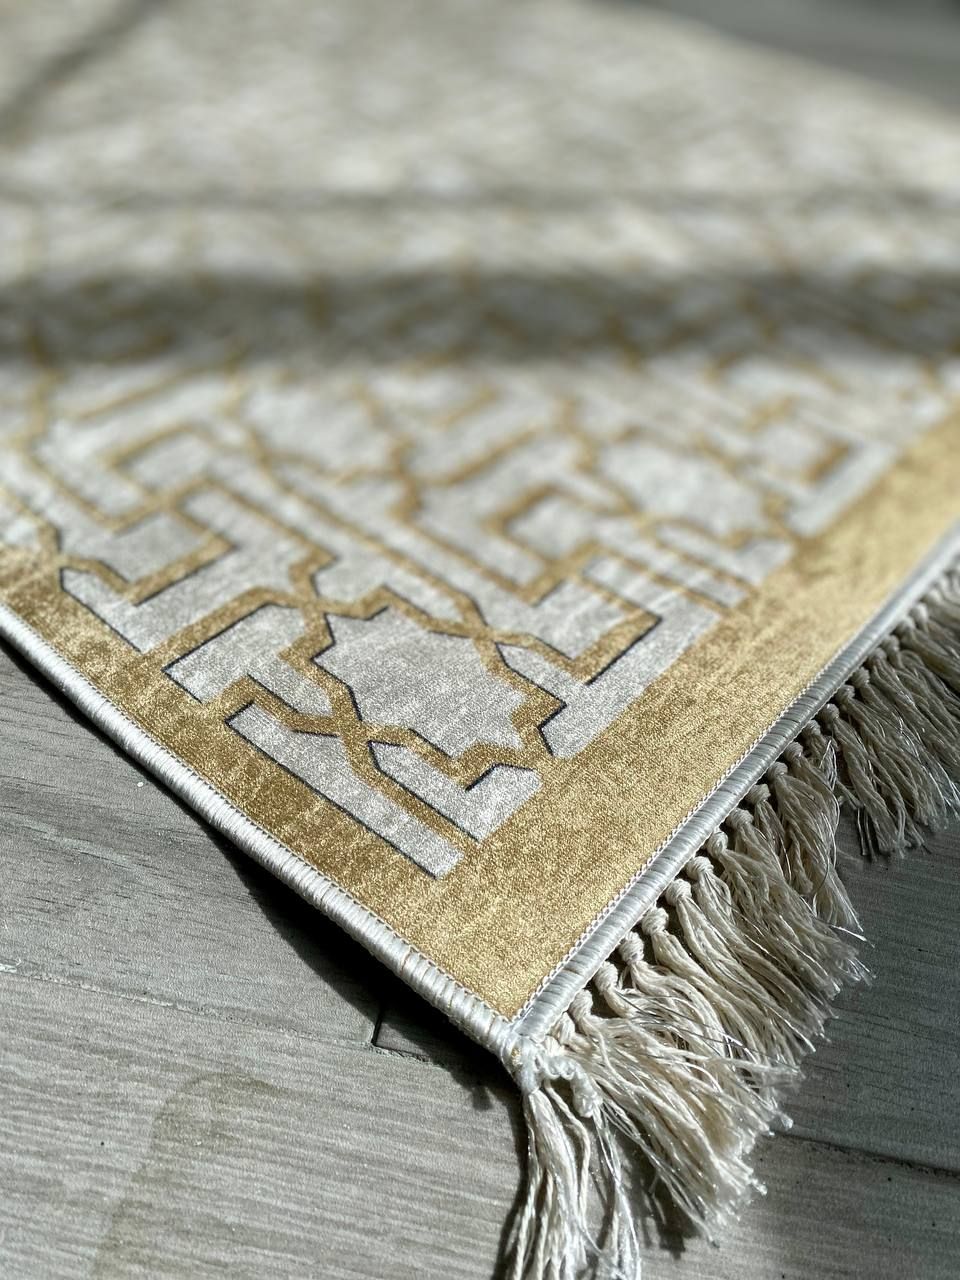 Турецький безворсовий килим "Гетсбі" підкладка з еко-шкіри